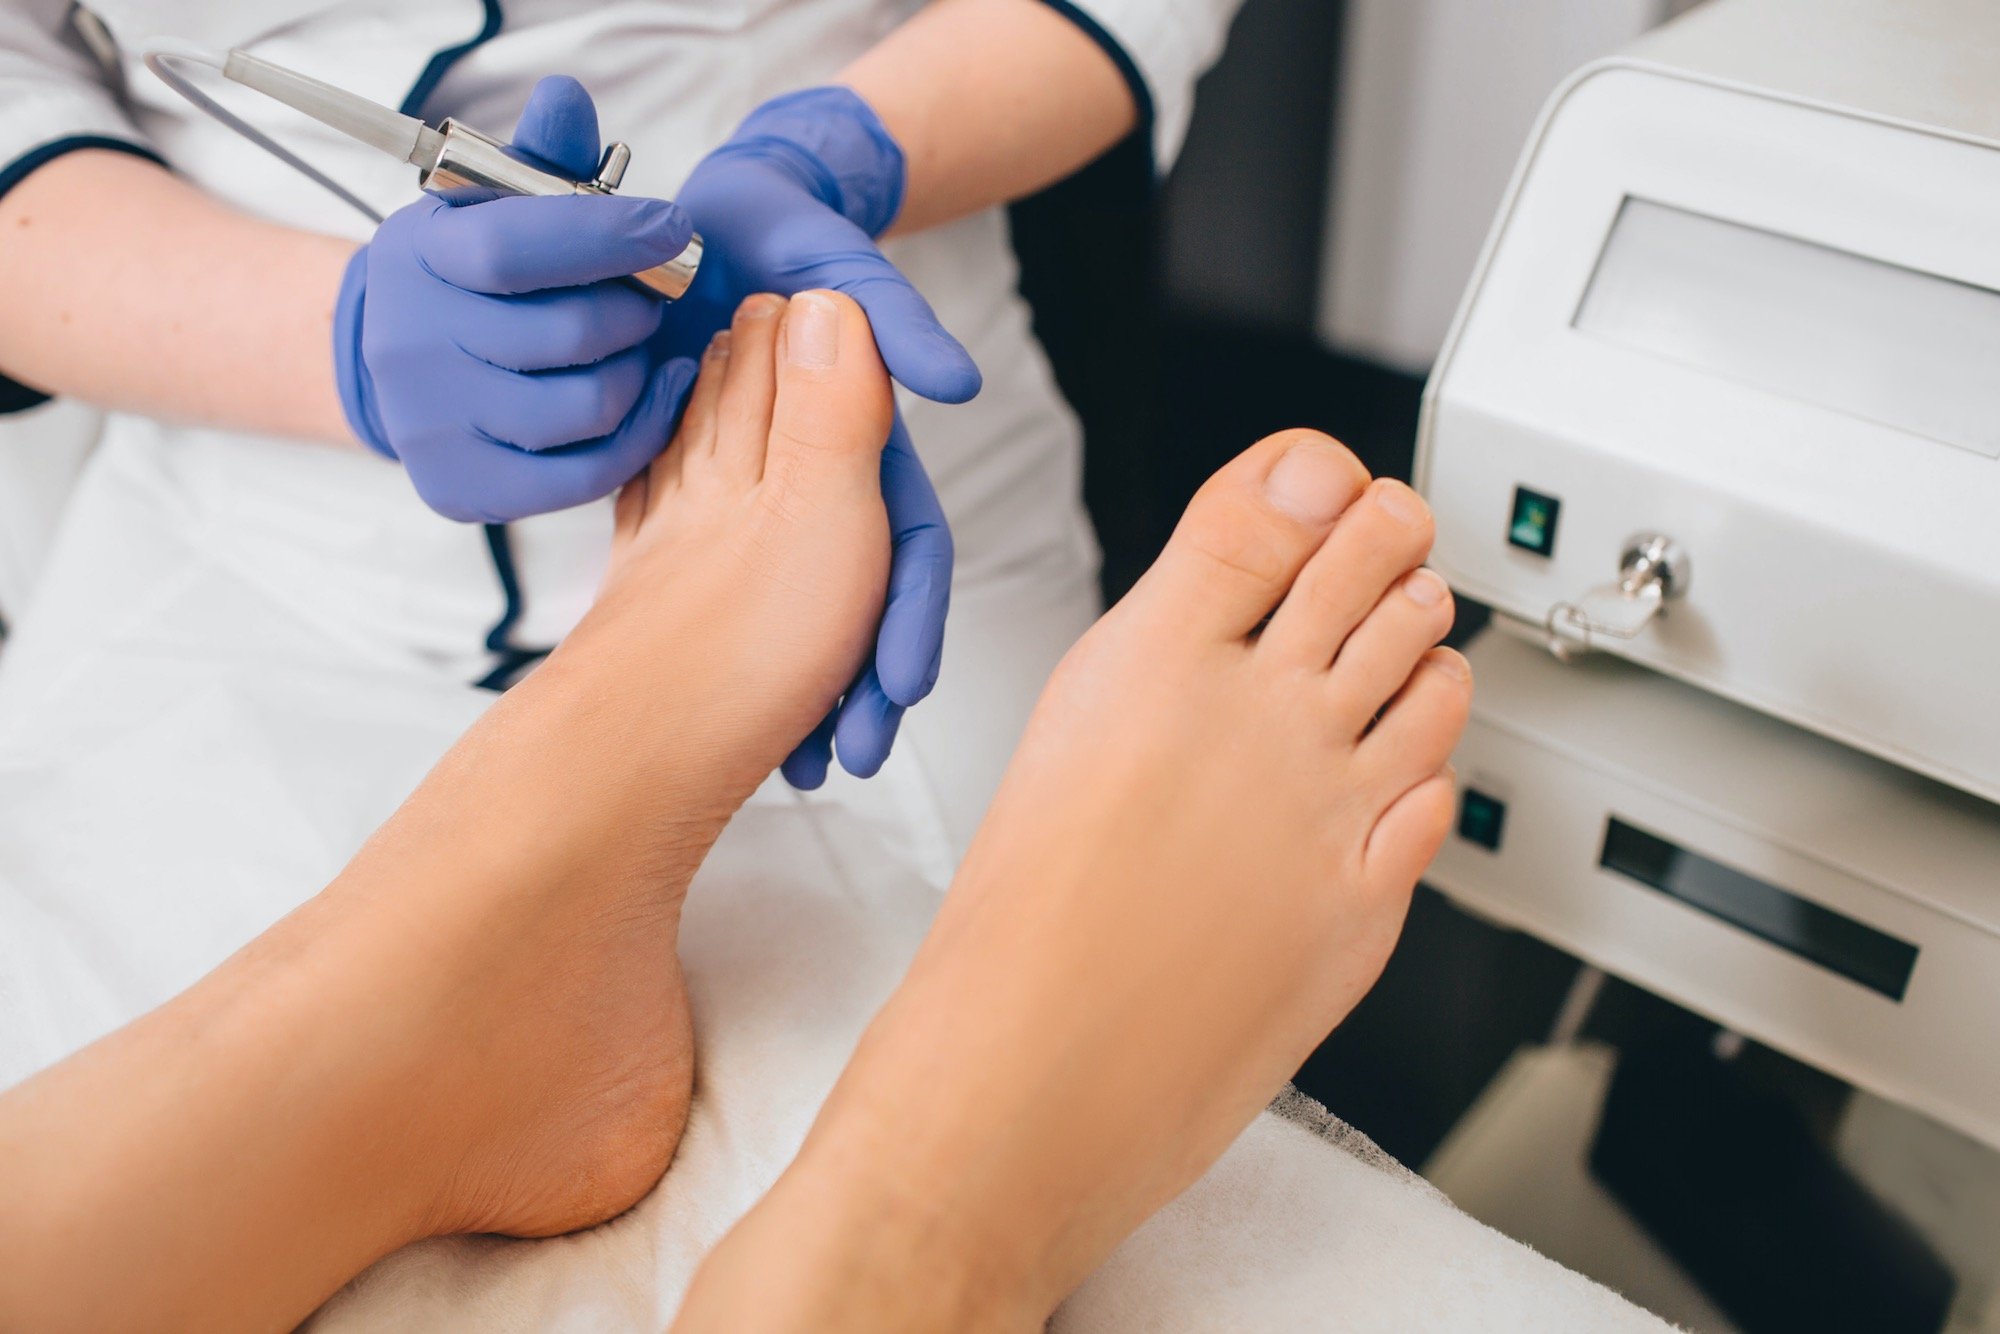 toenail-fungus-laser-treatment